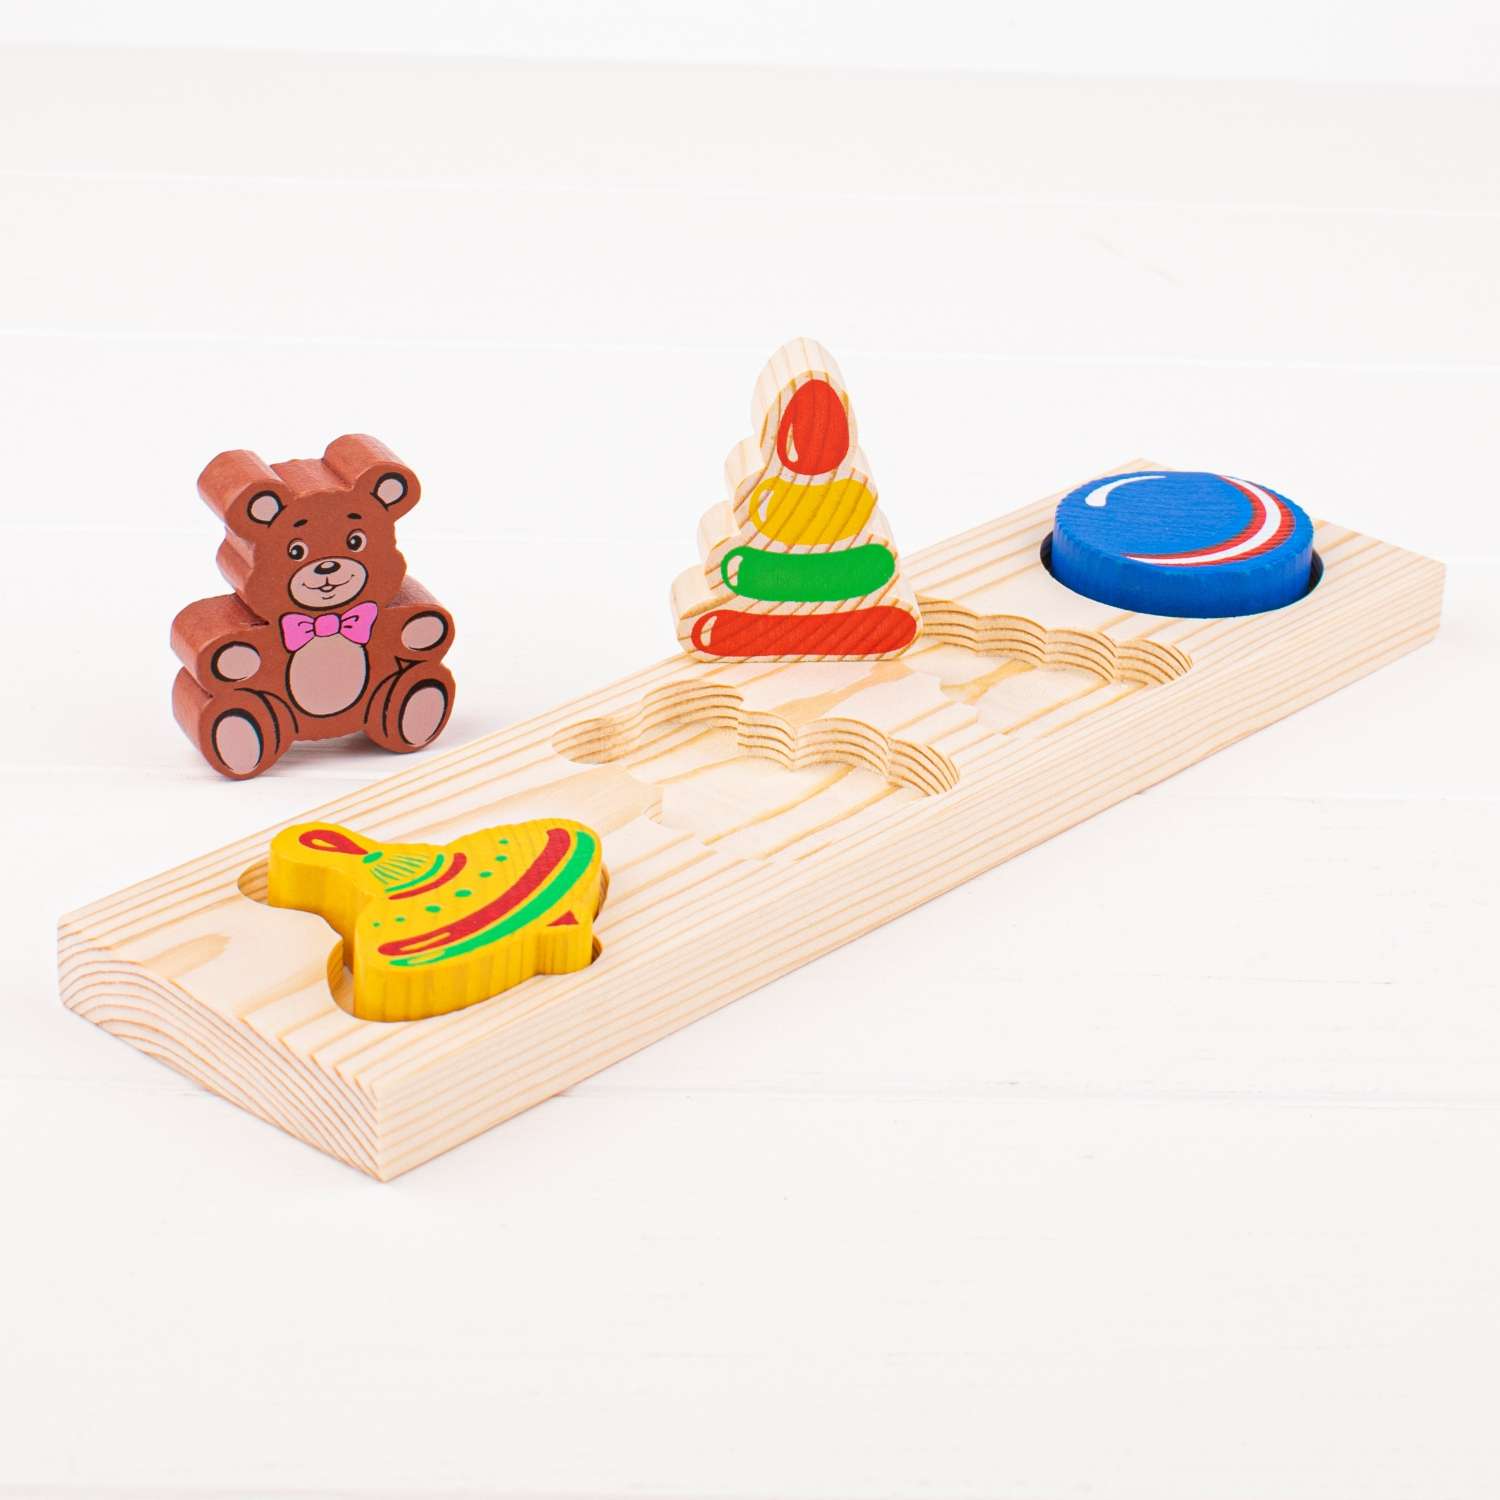 Рамка-Вкладыш Томик Игрушки 5 деталей 451 развивающая деревянная игрушка - фото 4